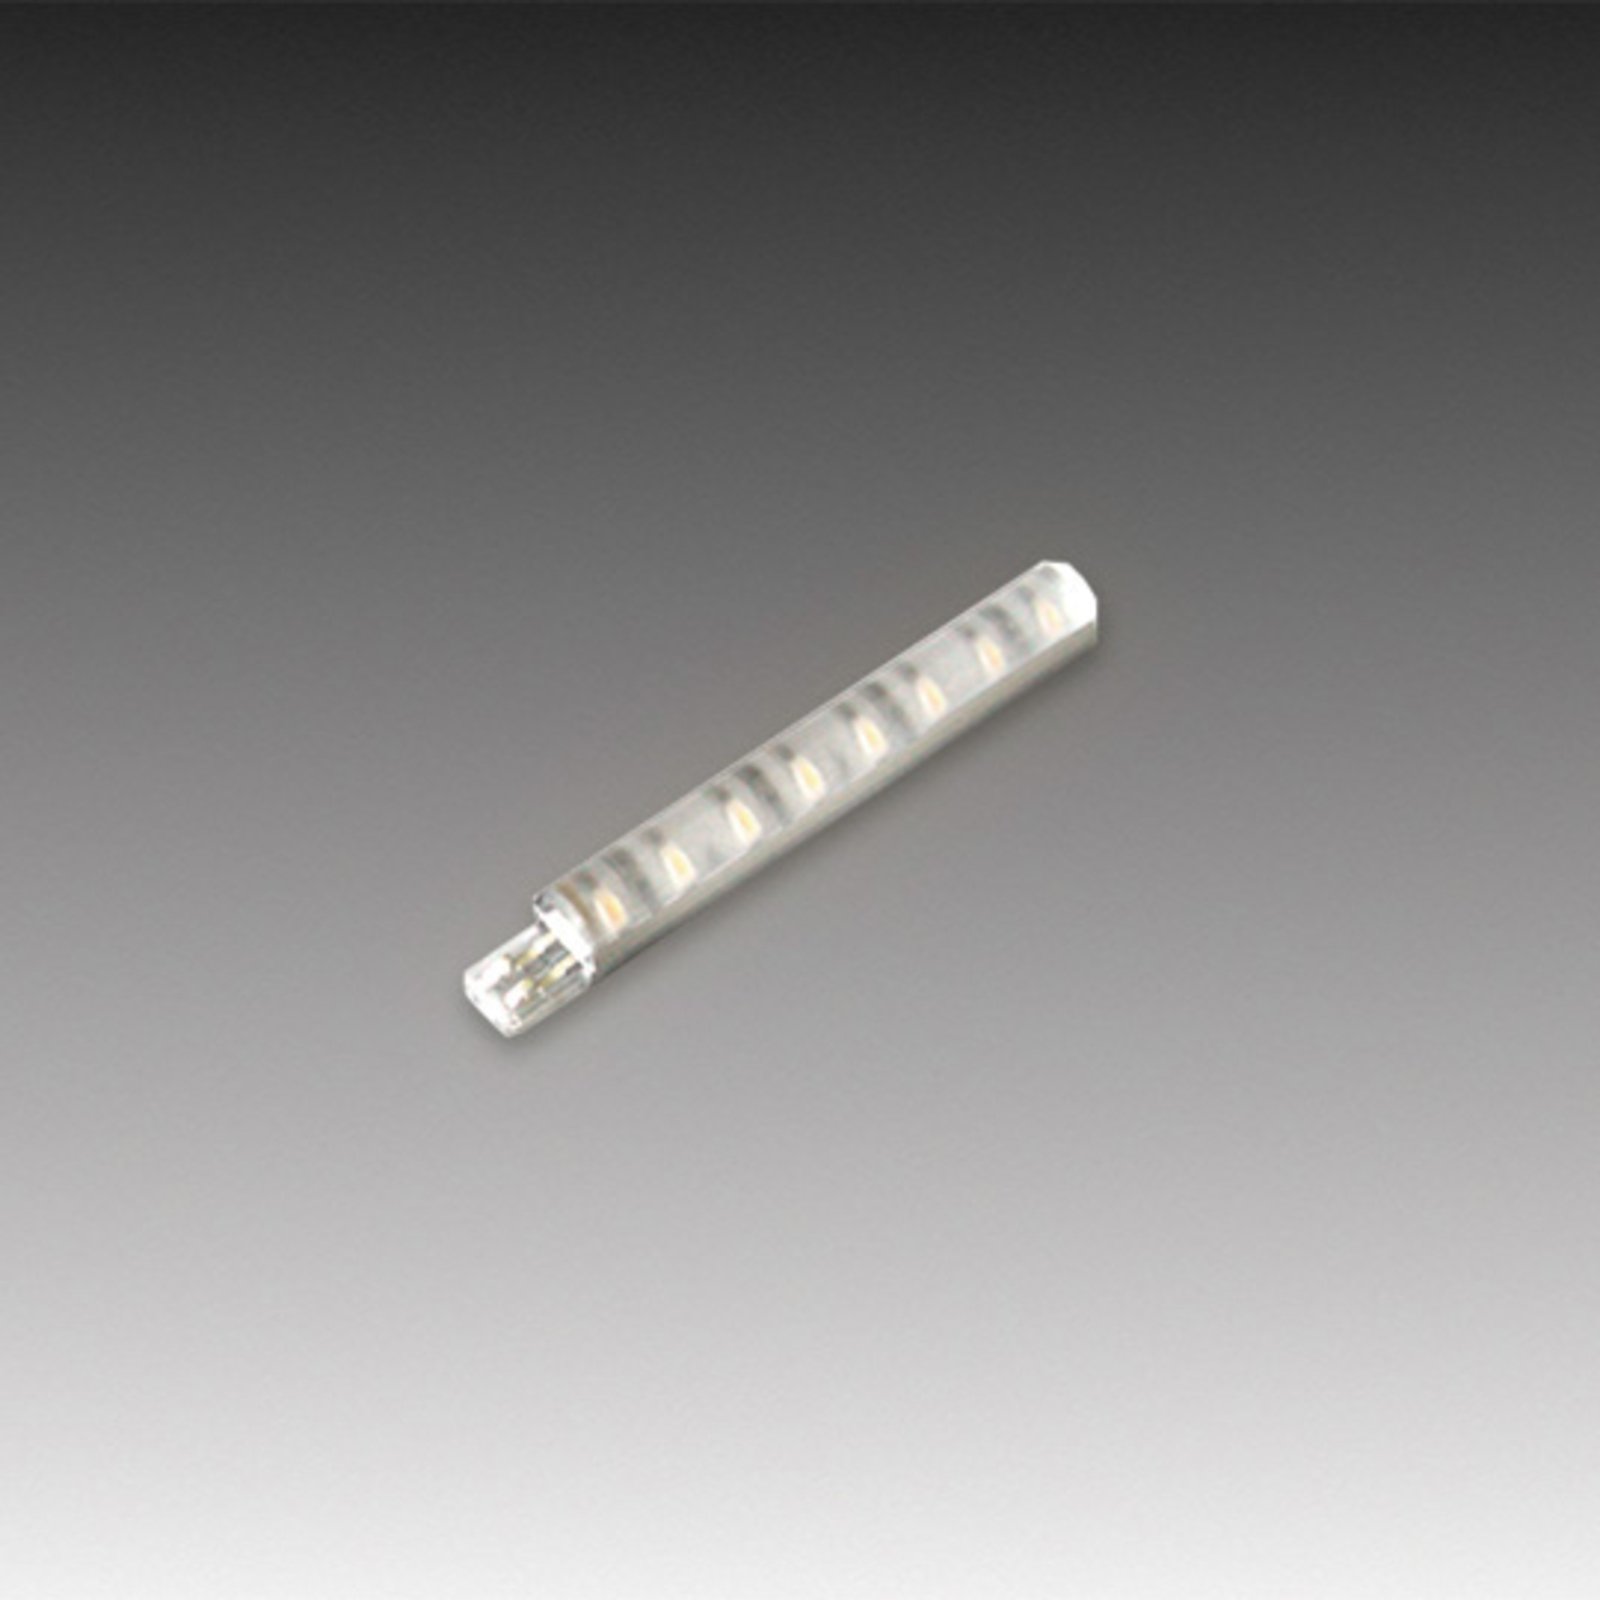 Tige LED Stick 2 pour meuble, 7 cm, blanc chaud